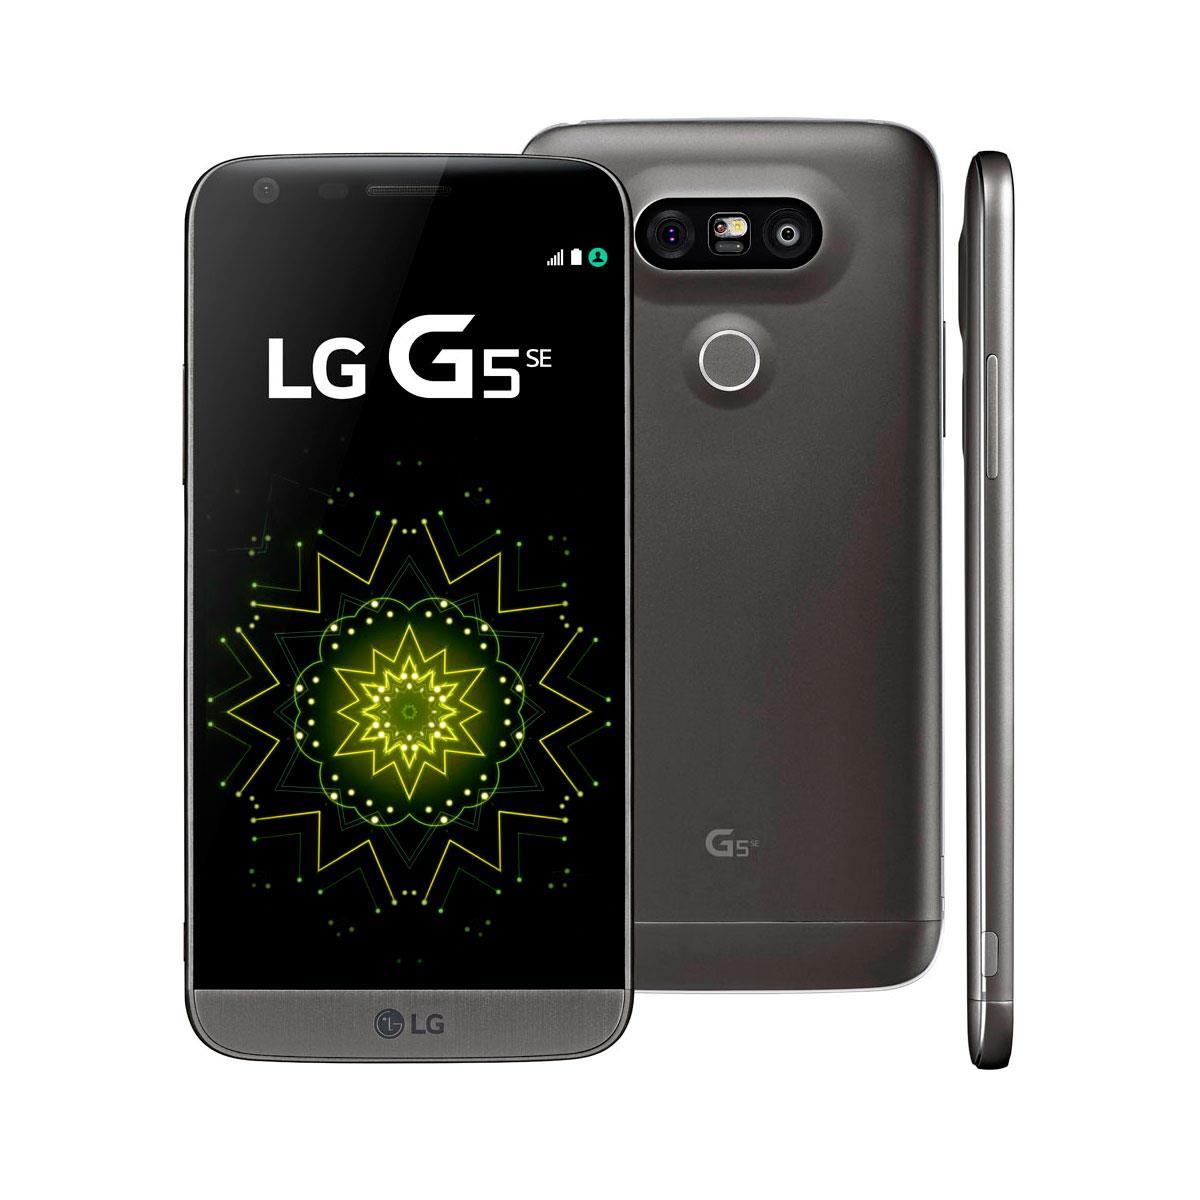 LG G5 ha vendido 1.6M de smartphones a nivel mundial